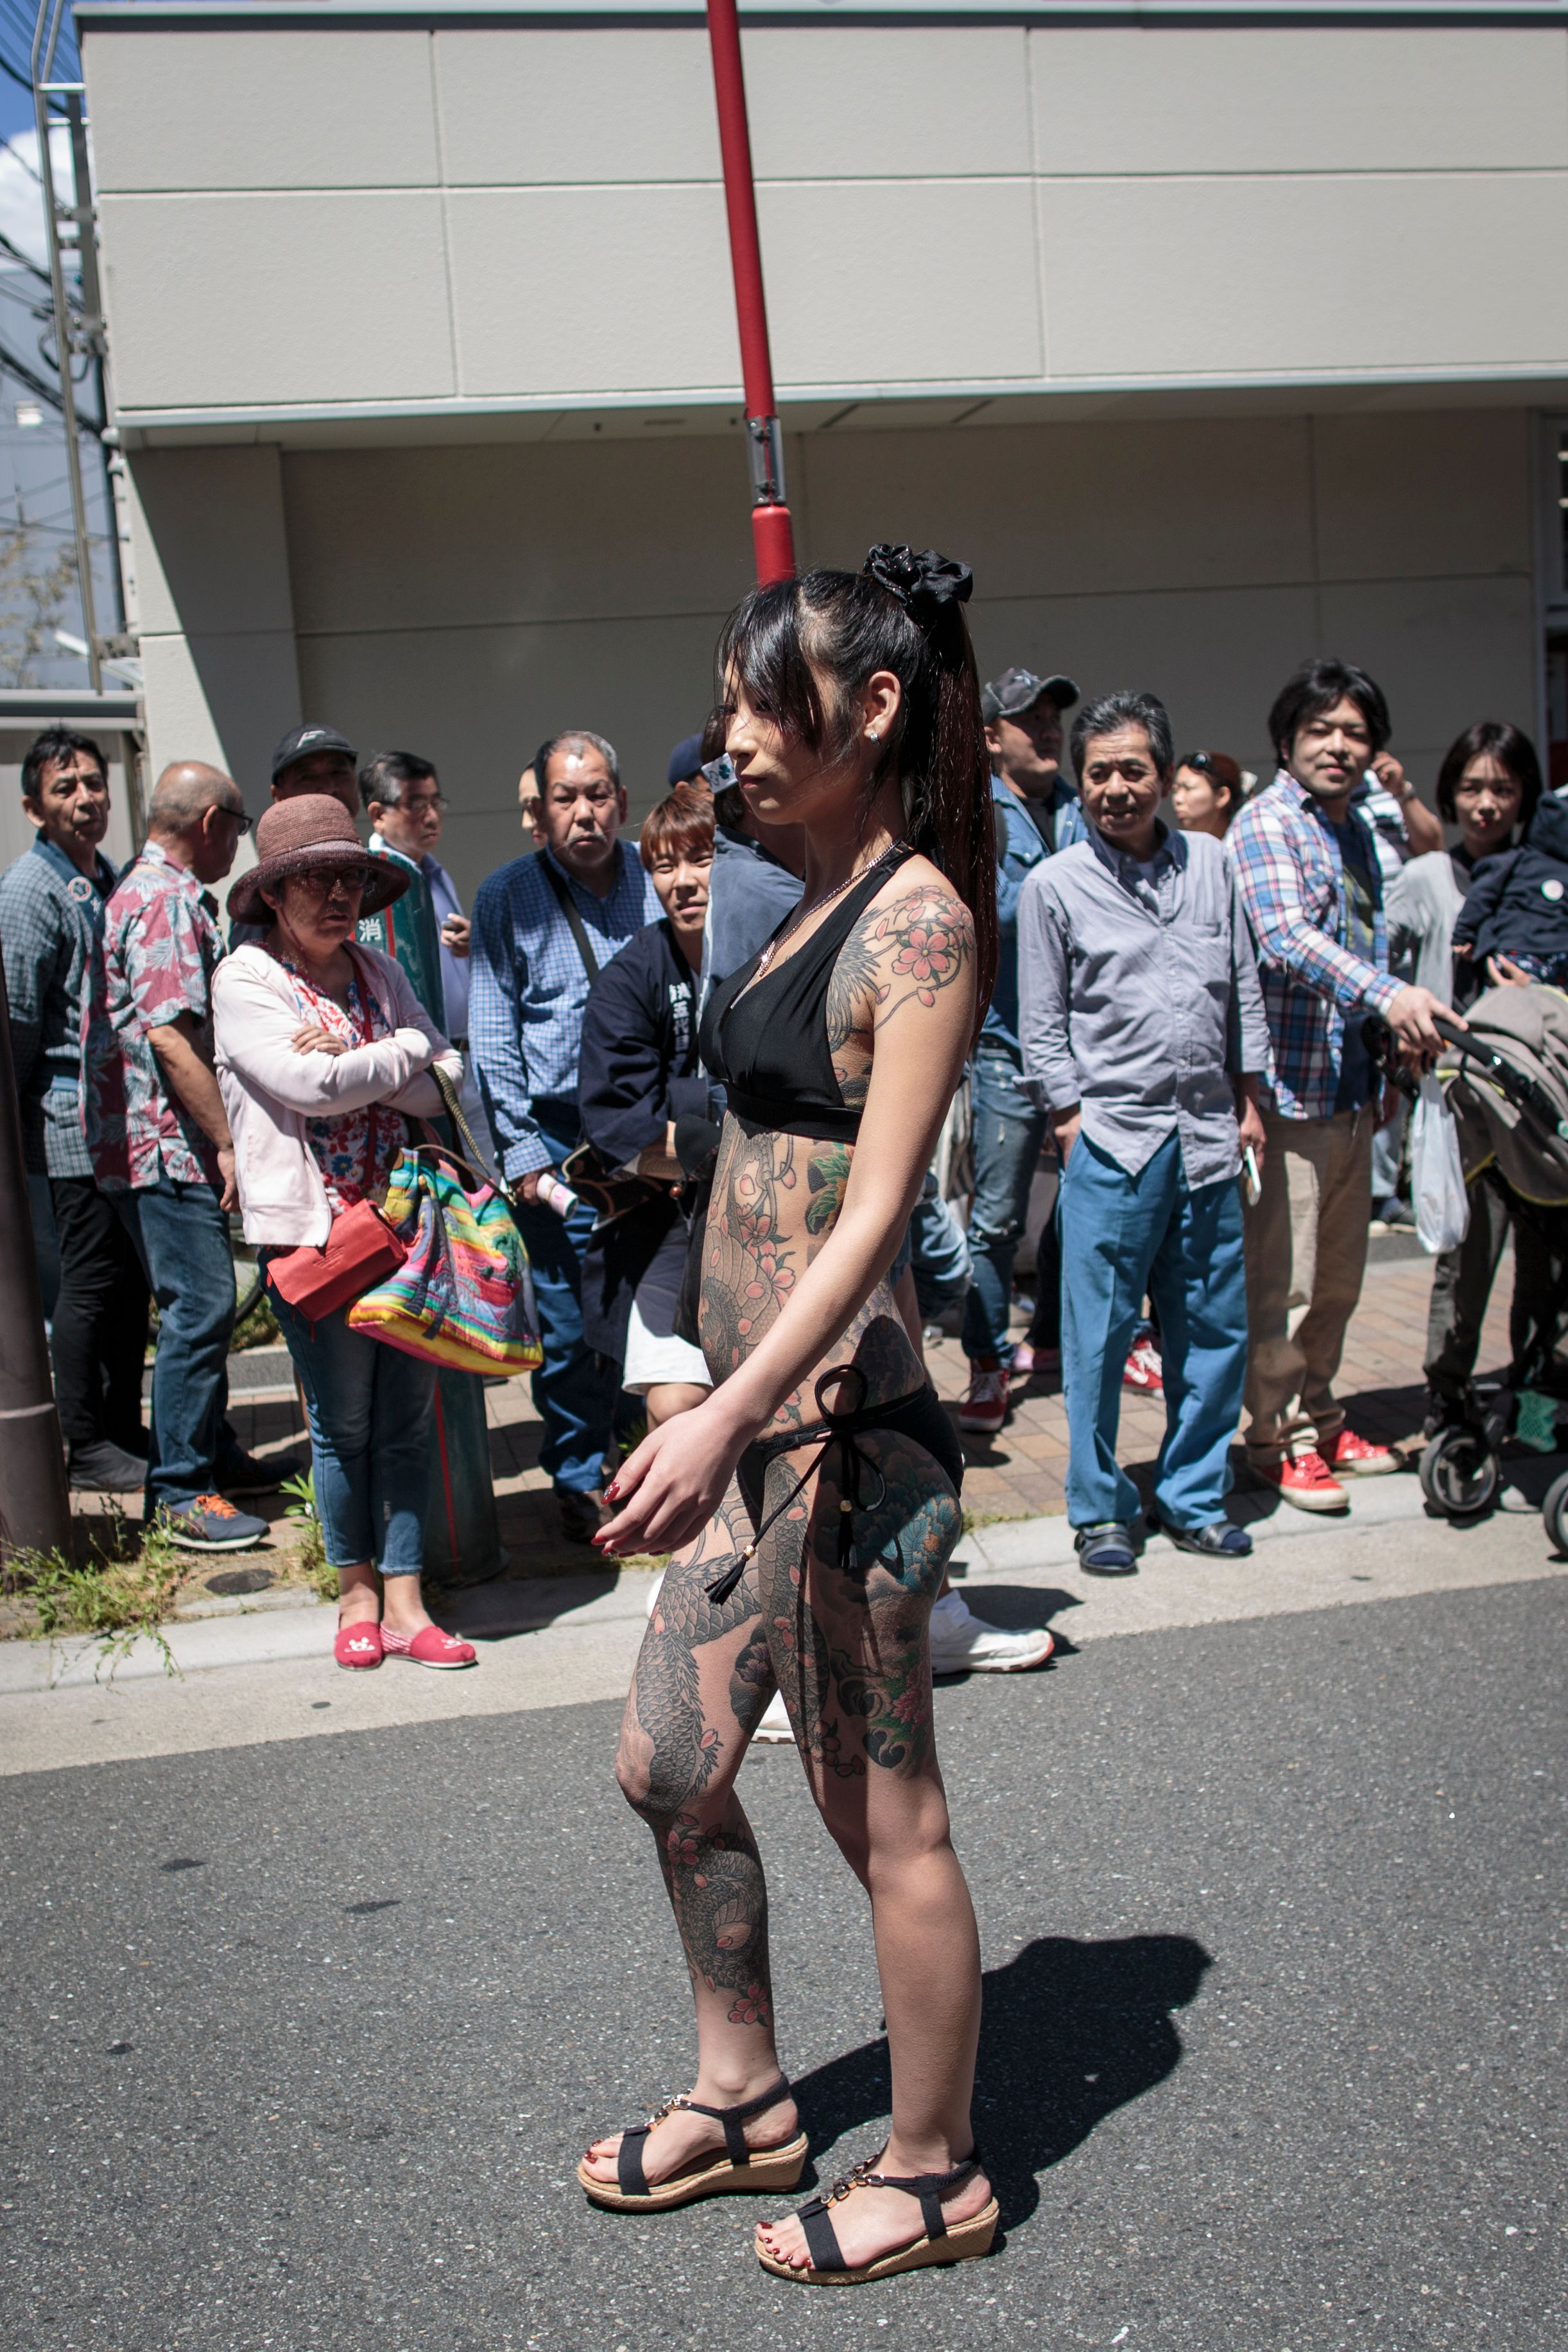 فتاة يابانية بملابس البحر خلال احتفالات دينية